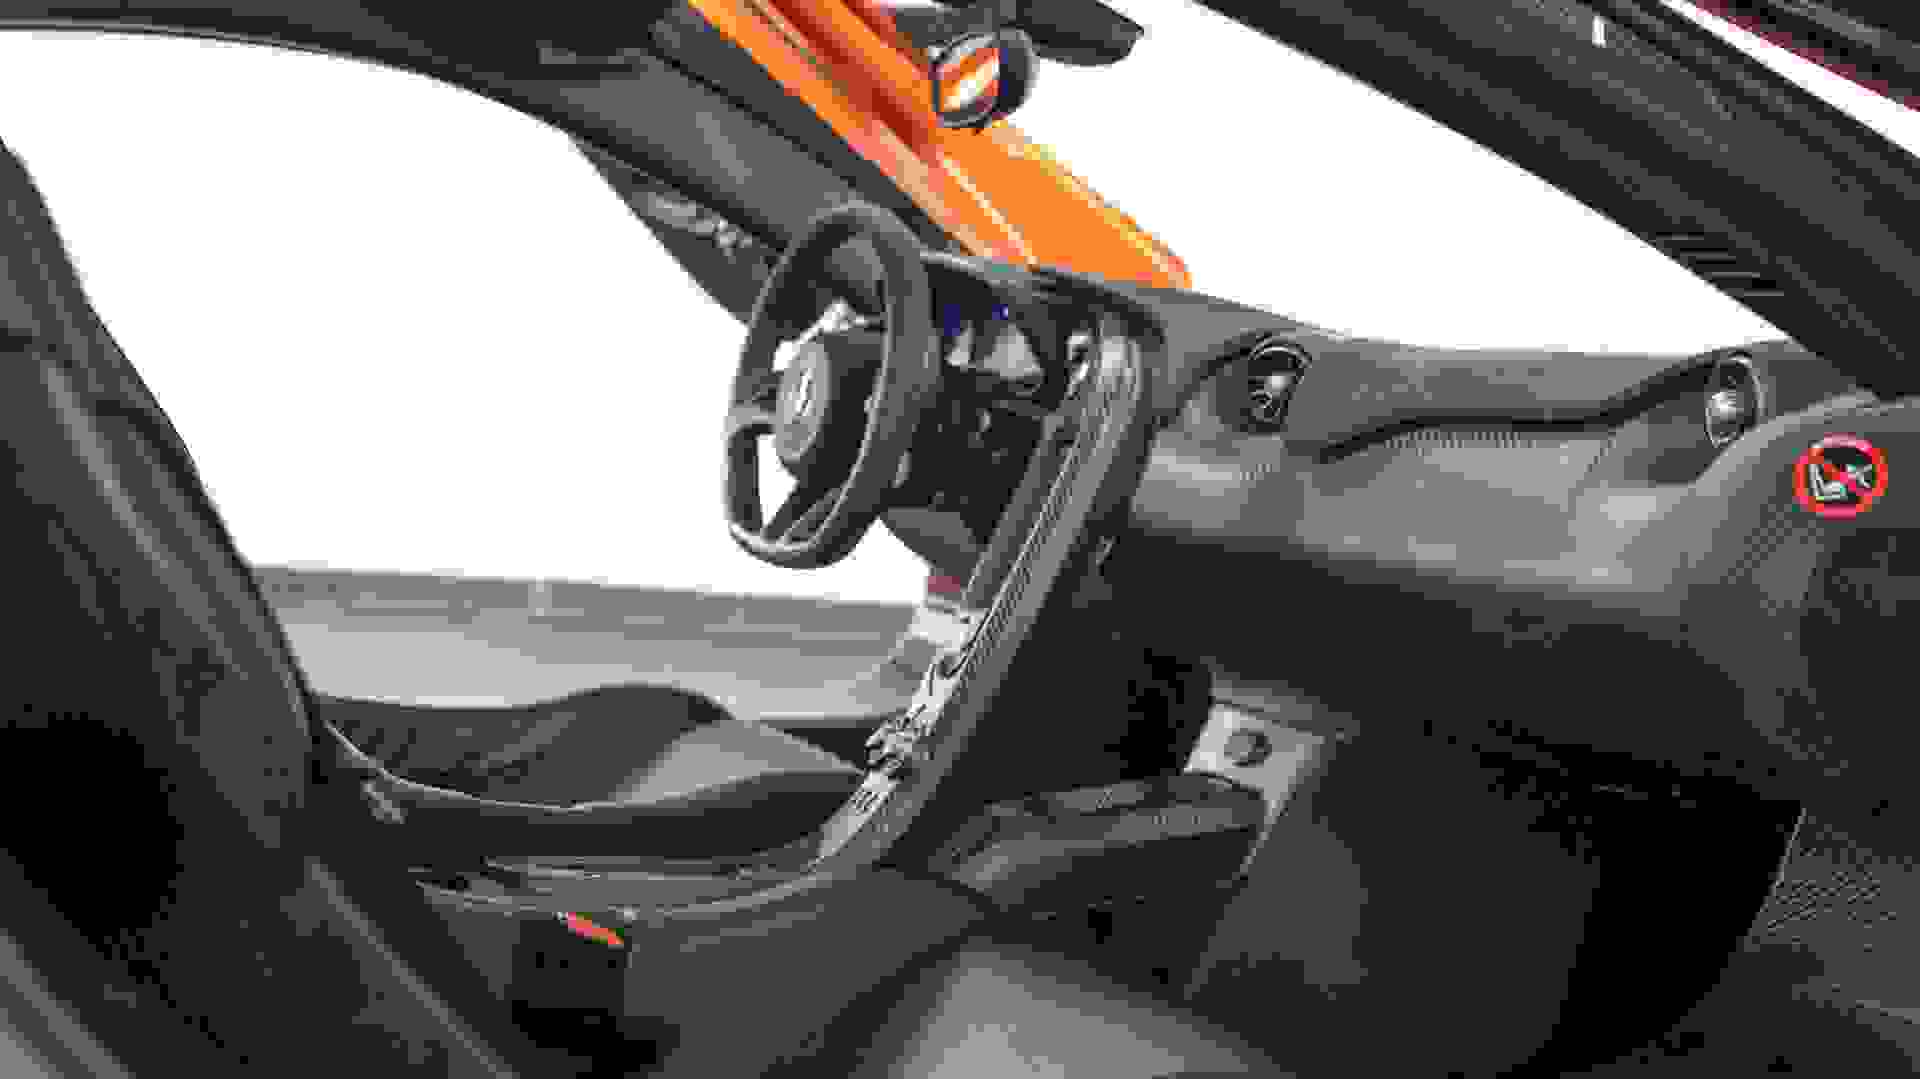 McLaren P1 Photo 50a0b8fb-0764-477f-ae41-17c242653764.jpg